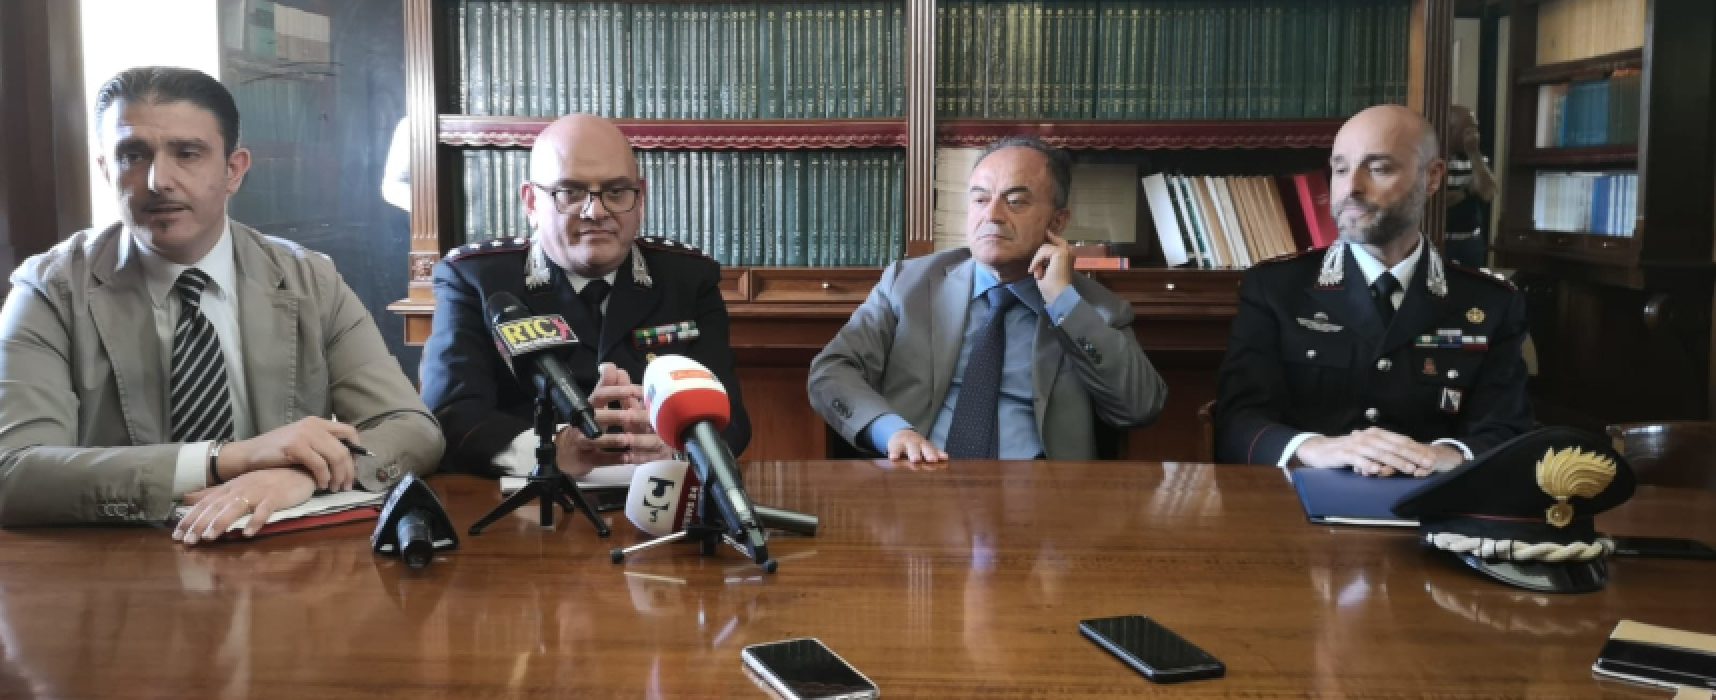 Carcere Cosenza come “albergo” per detenuti, due agenti arrestati, offesa memoria Sergio Cosmai